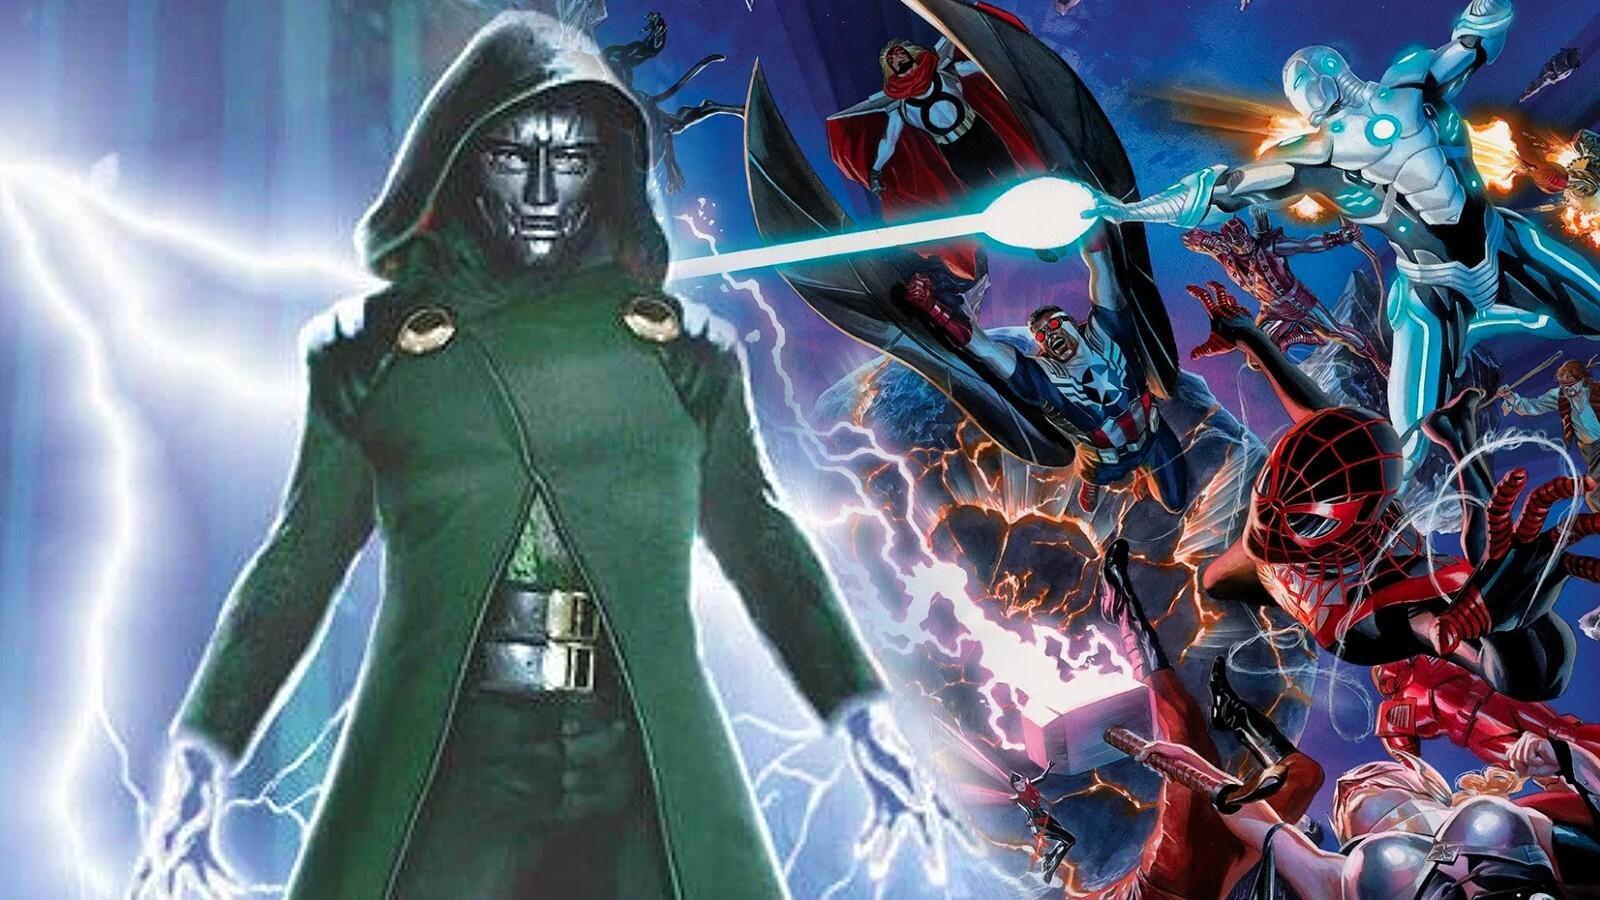 Doctor Doom faces off against the Avengers in Avengers: Secret Wars